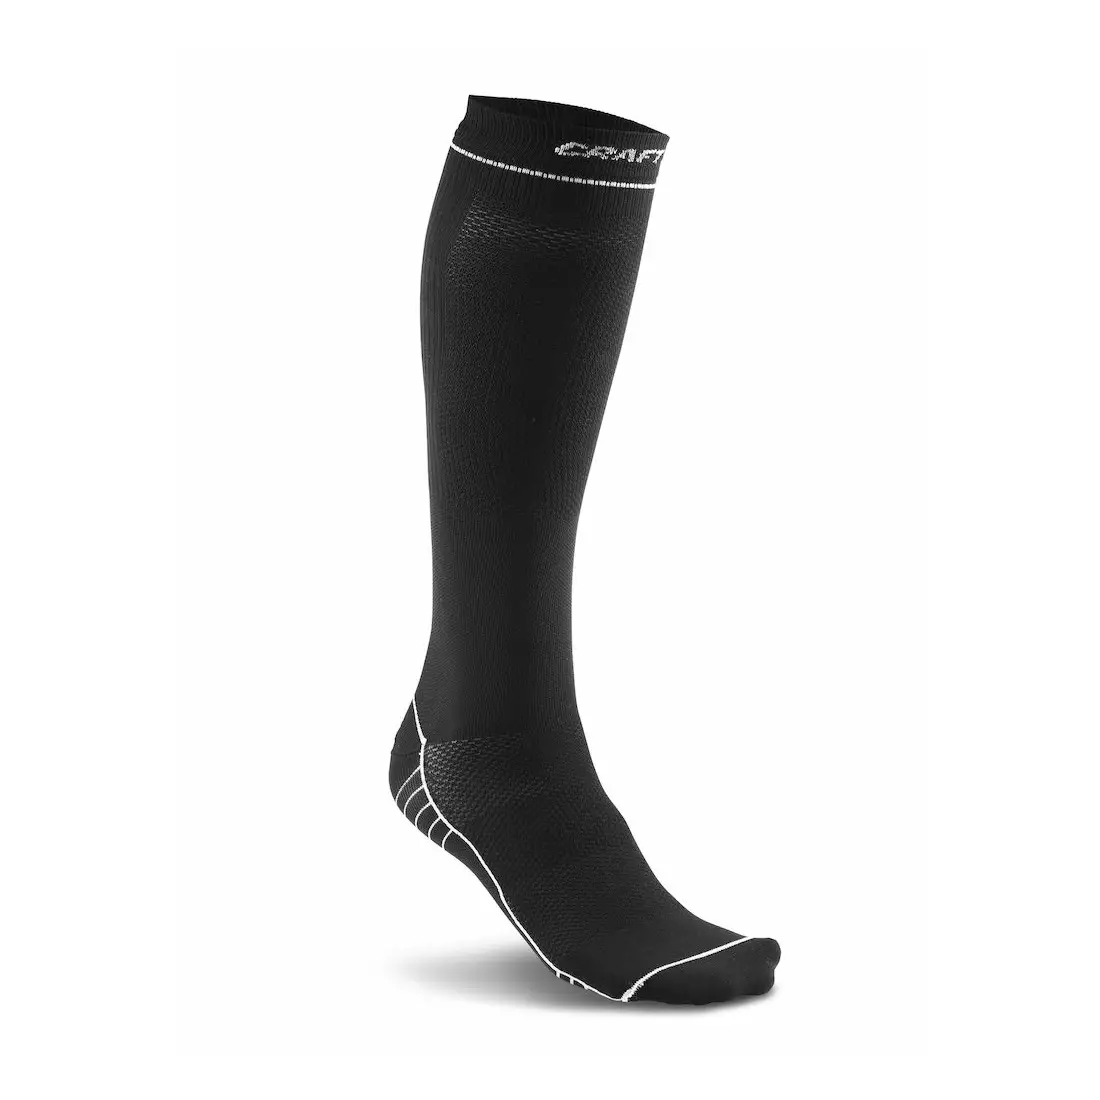 CRAFT kompresní ponožky 1904087-9900 (černé)